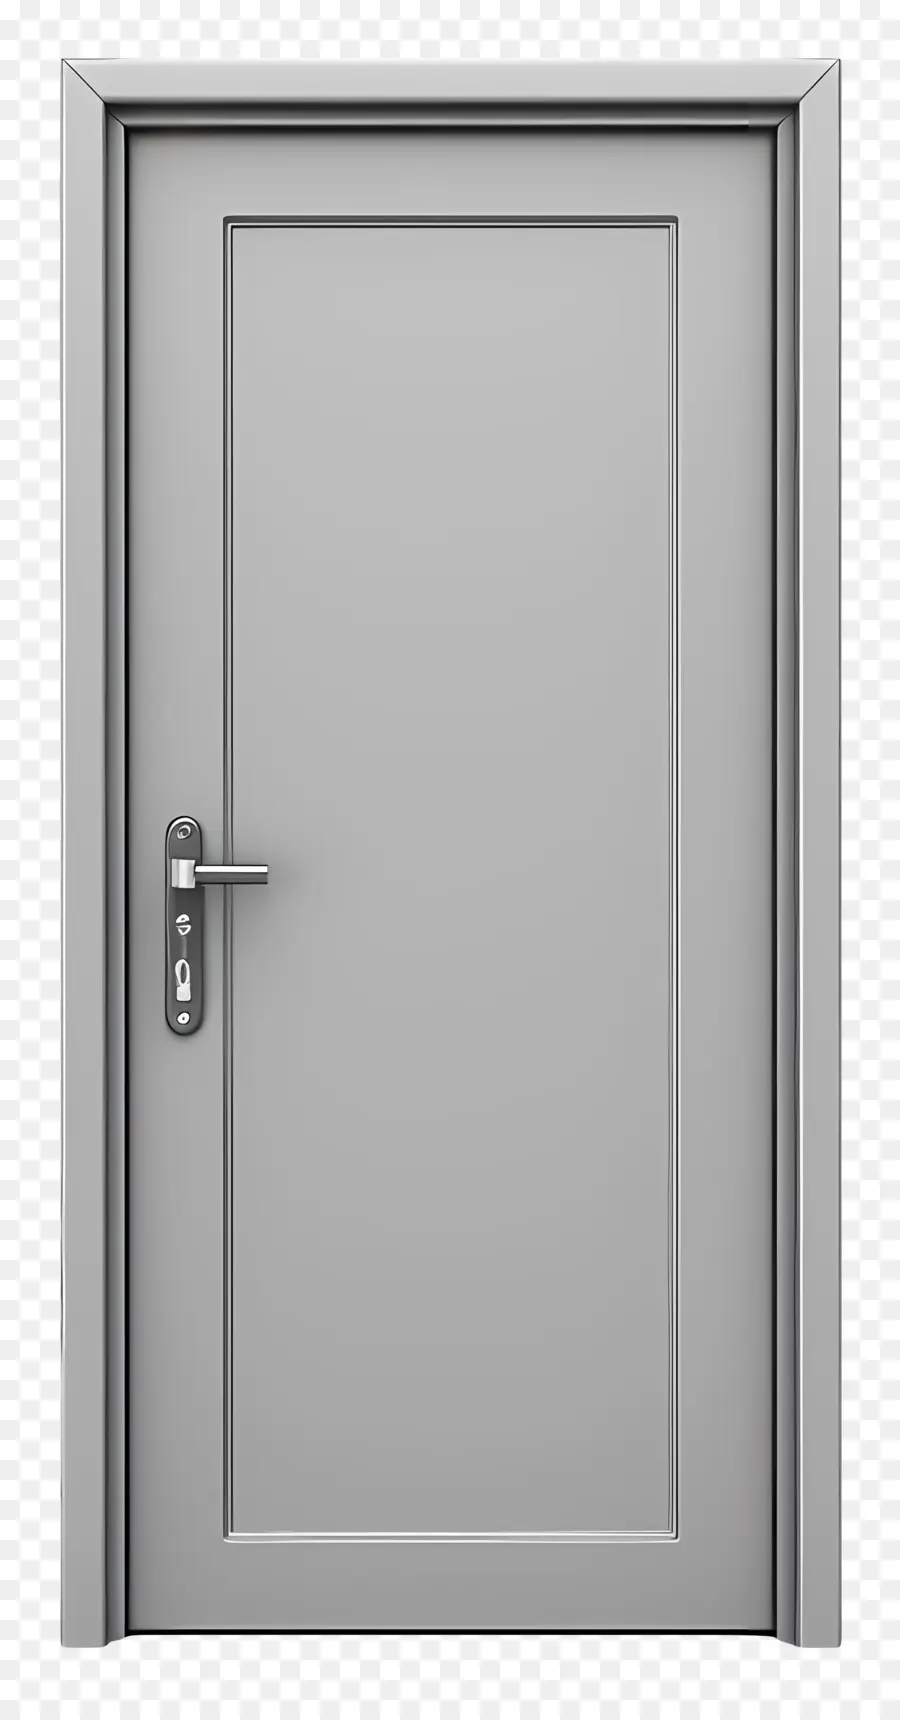 Khung cửa kim loại mở nền màu xám nền đóng cửa thiết kế tối giản - Nền màu xám, cửa đóng không có khung